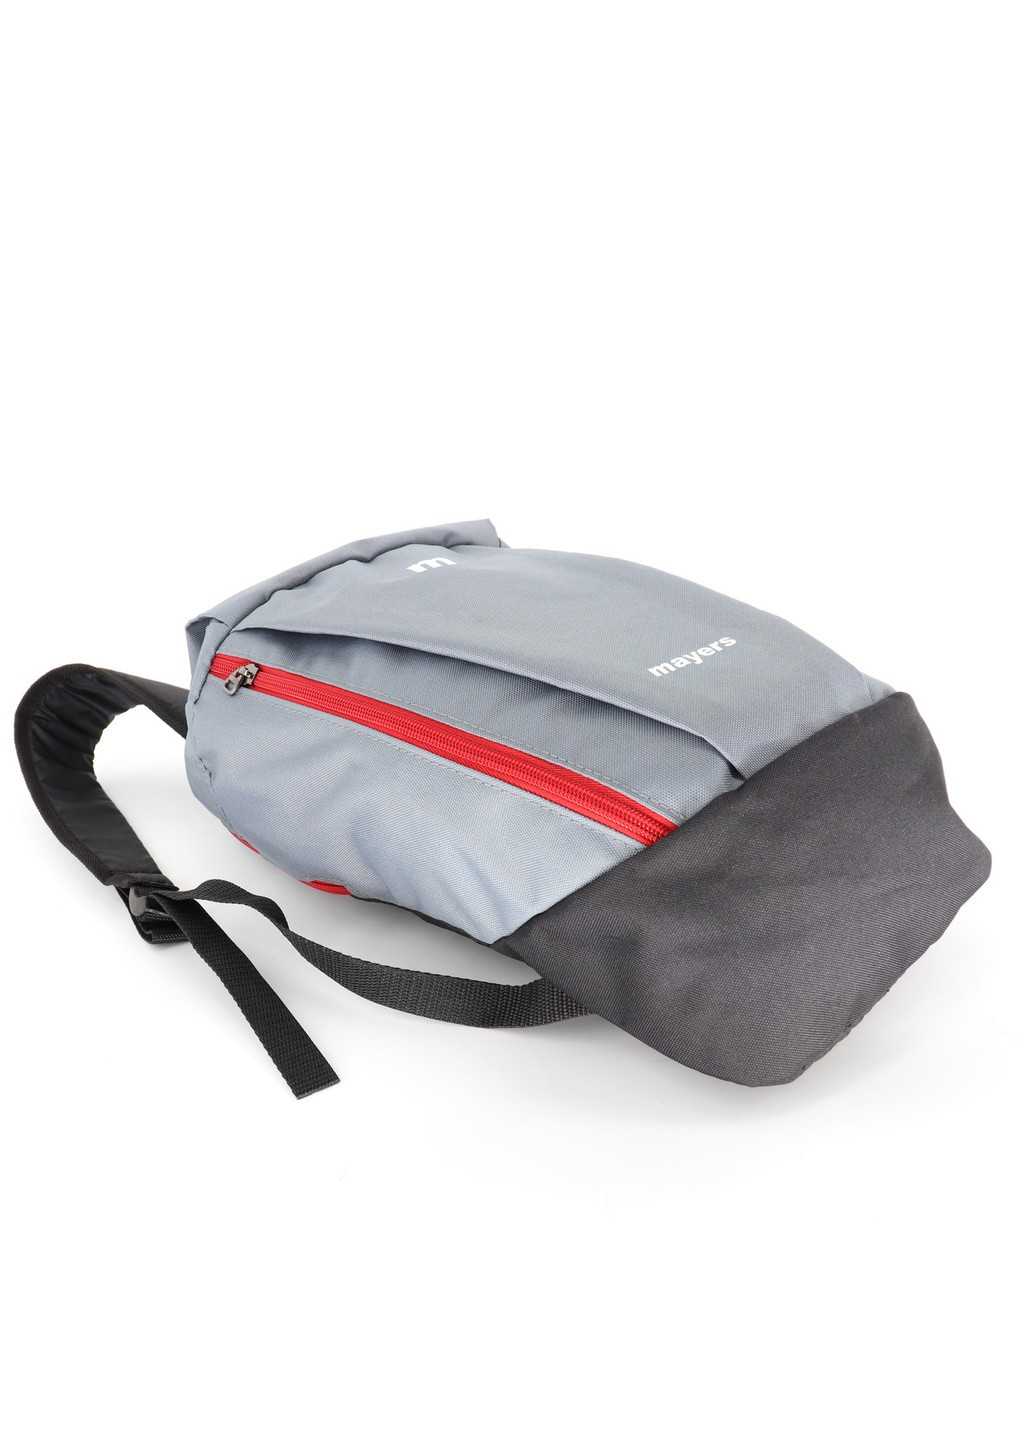 Повседневный детский серый однотонный рюкзак Mayers износостойкий и вместительный в спортивном стиле 10 литров No Brand (258591300)